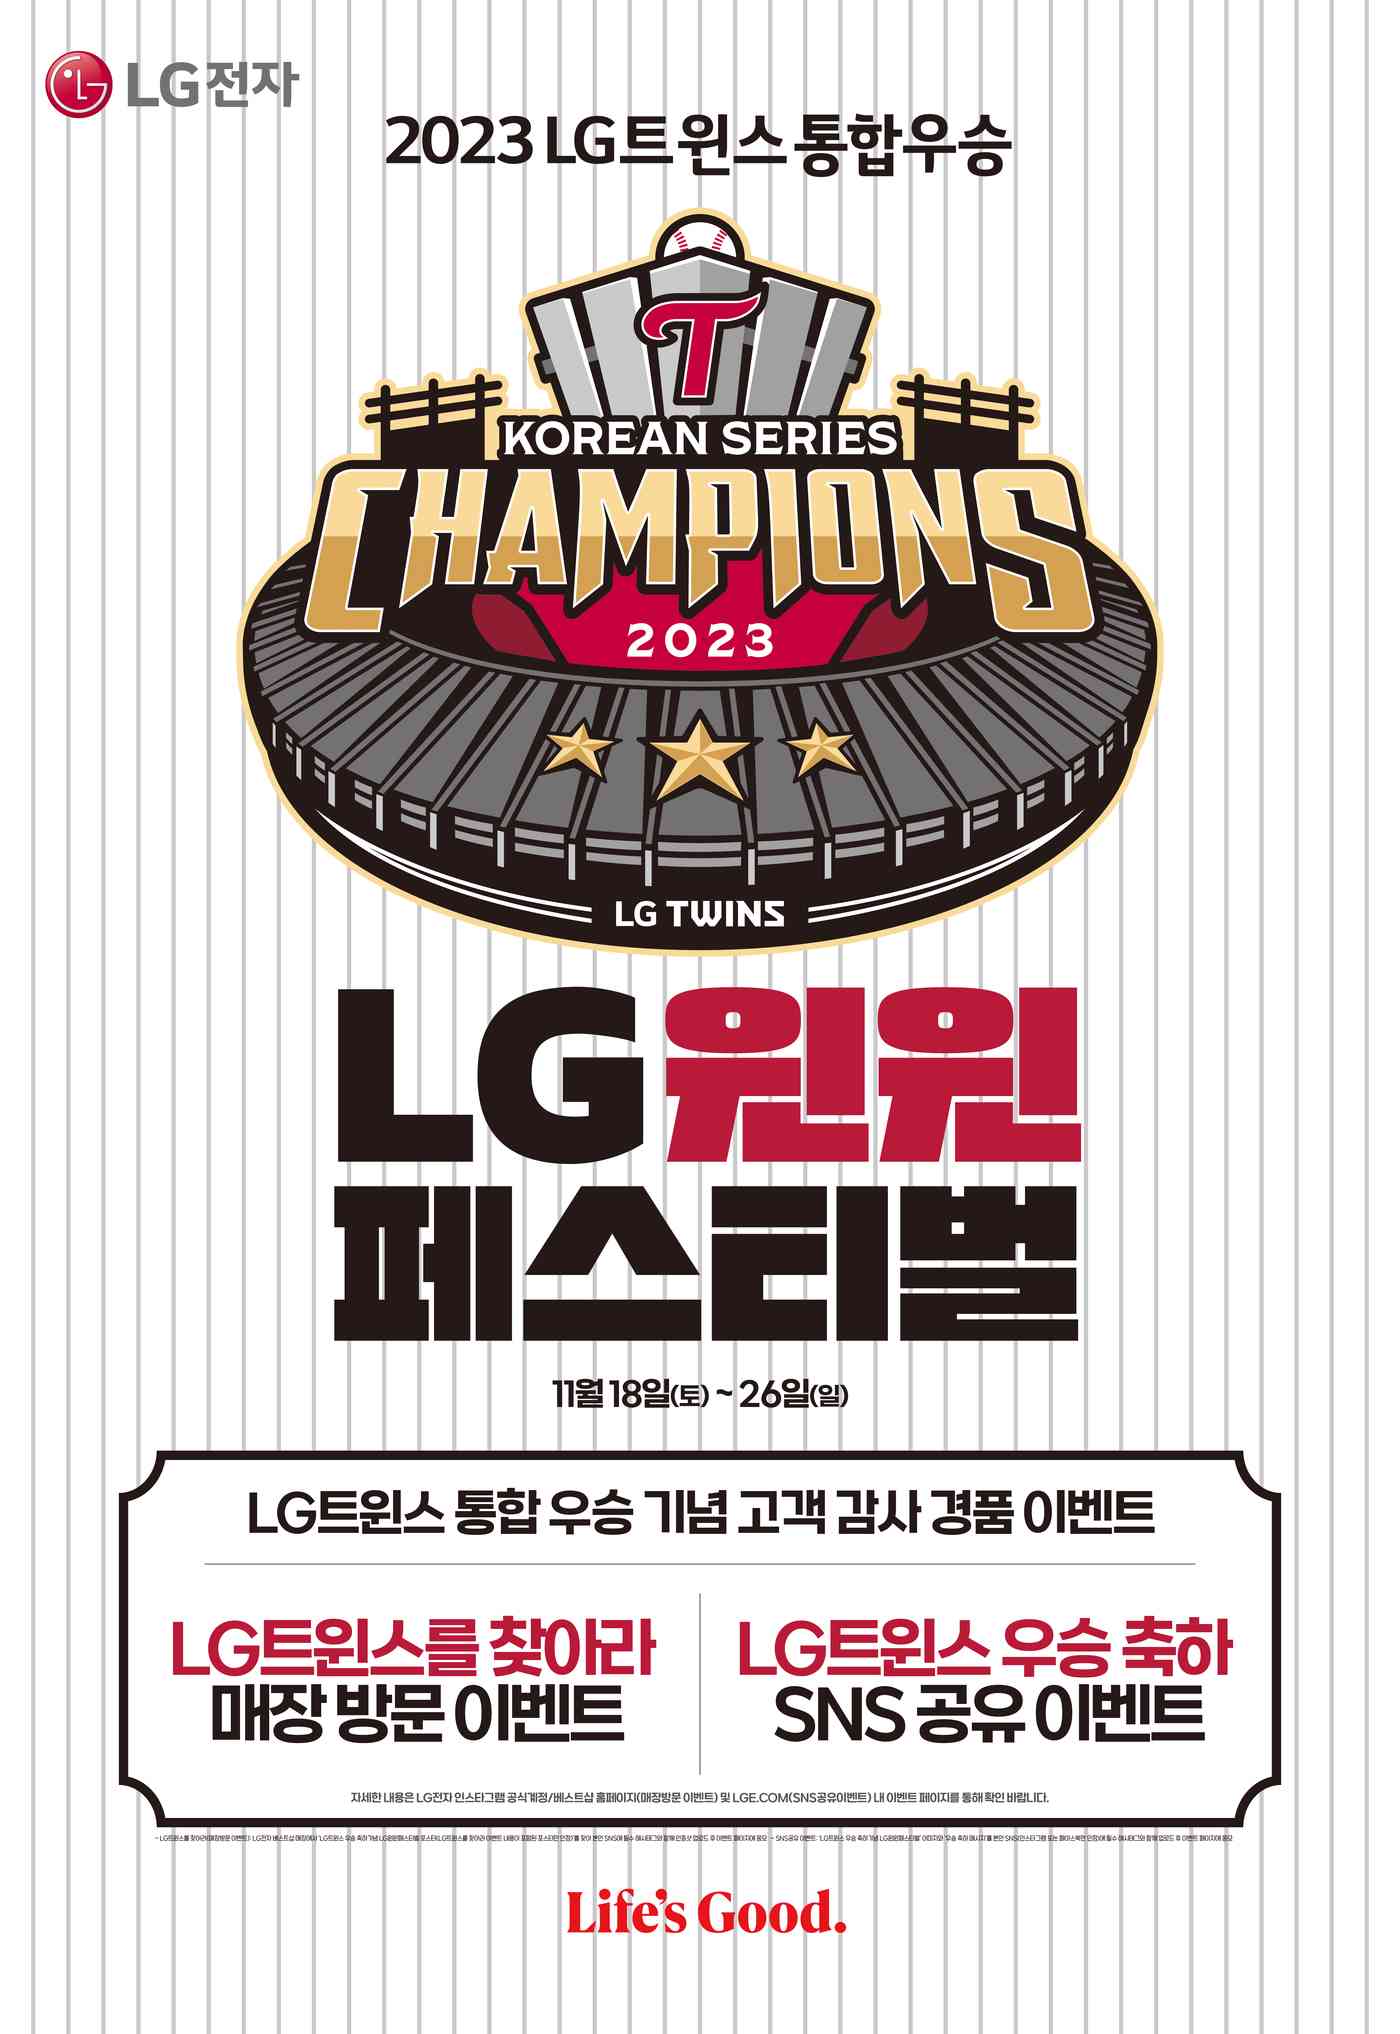  LG전자가 LG트윈스의 29년 만의 한국시리즈 우승을 기념해 29% 할인 프로모션을 진행한다. (LG전자 제공)